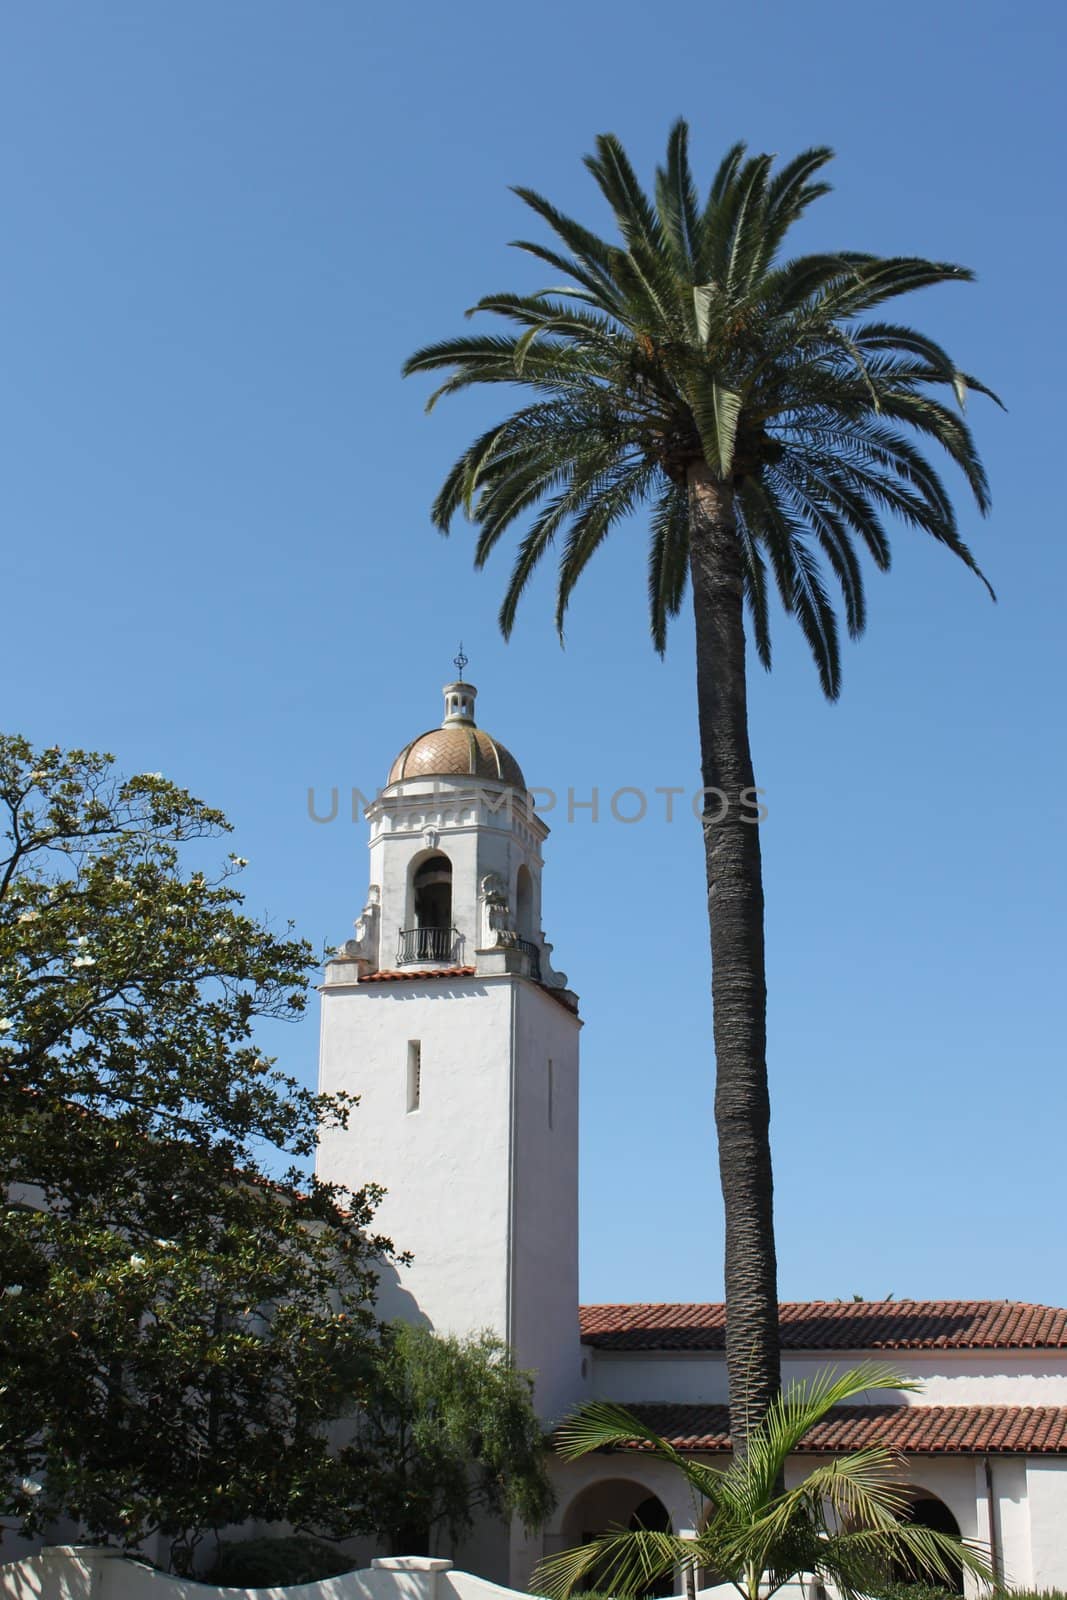 The historical Unitarian Society of Santa Barbara Church.